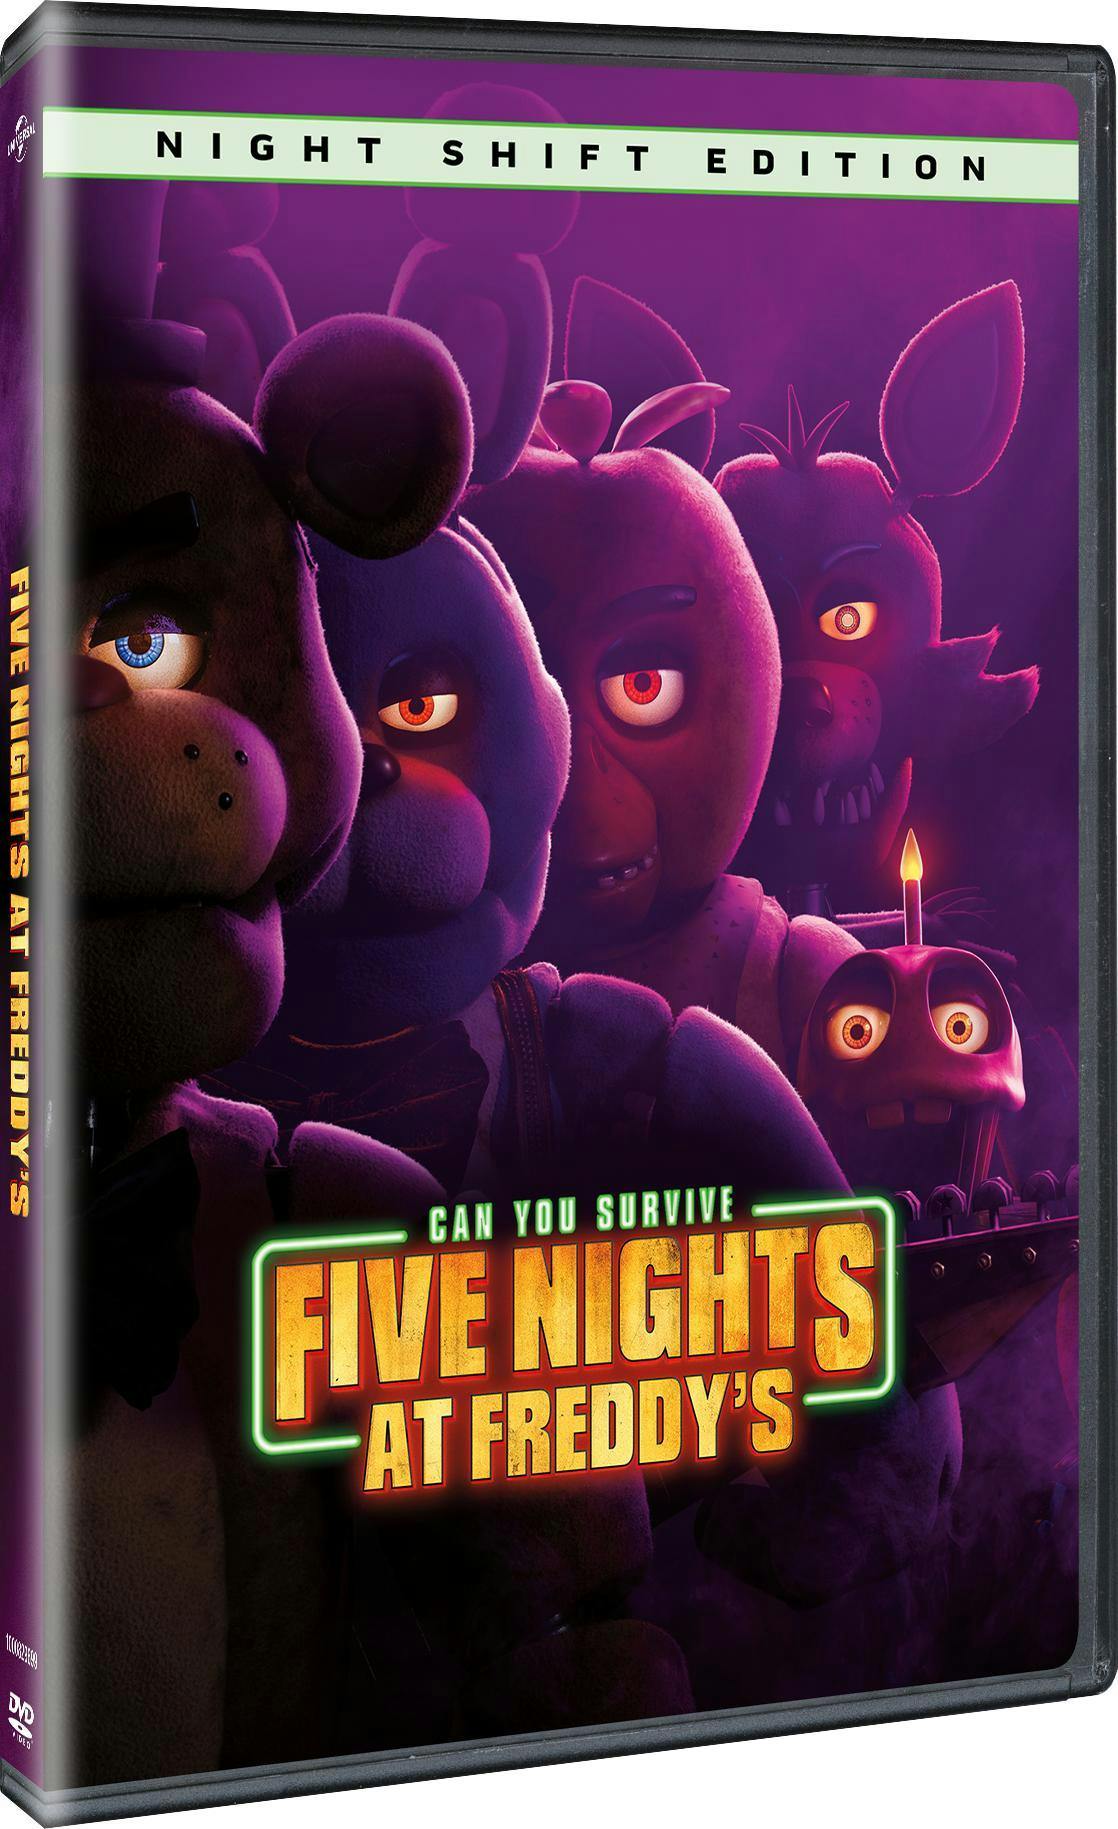 Buy Five Nights at Freddy's DVD | GRUV